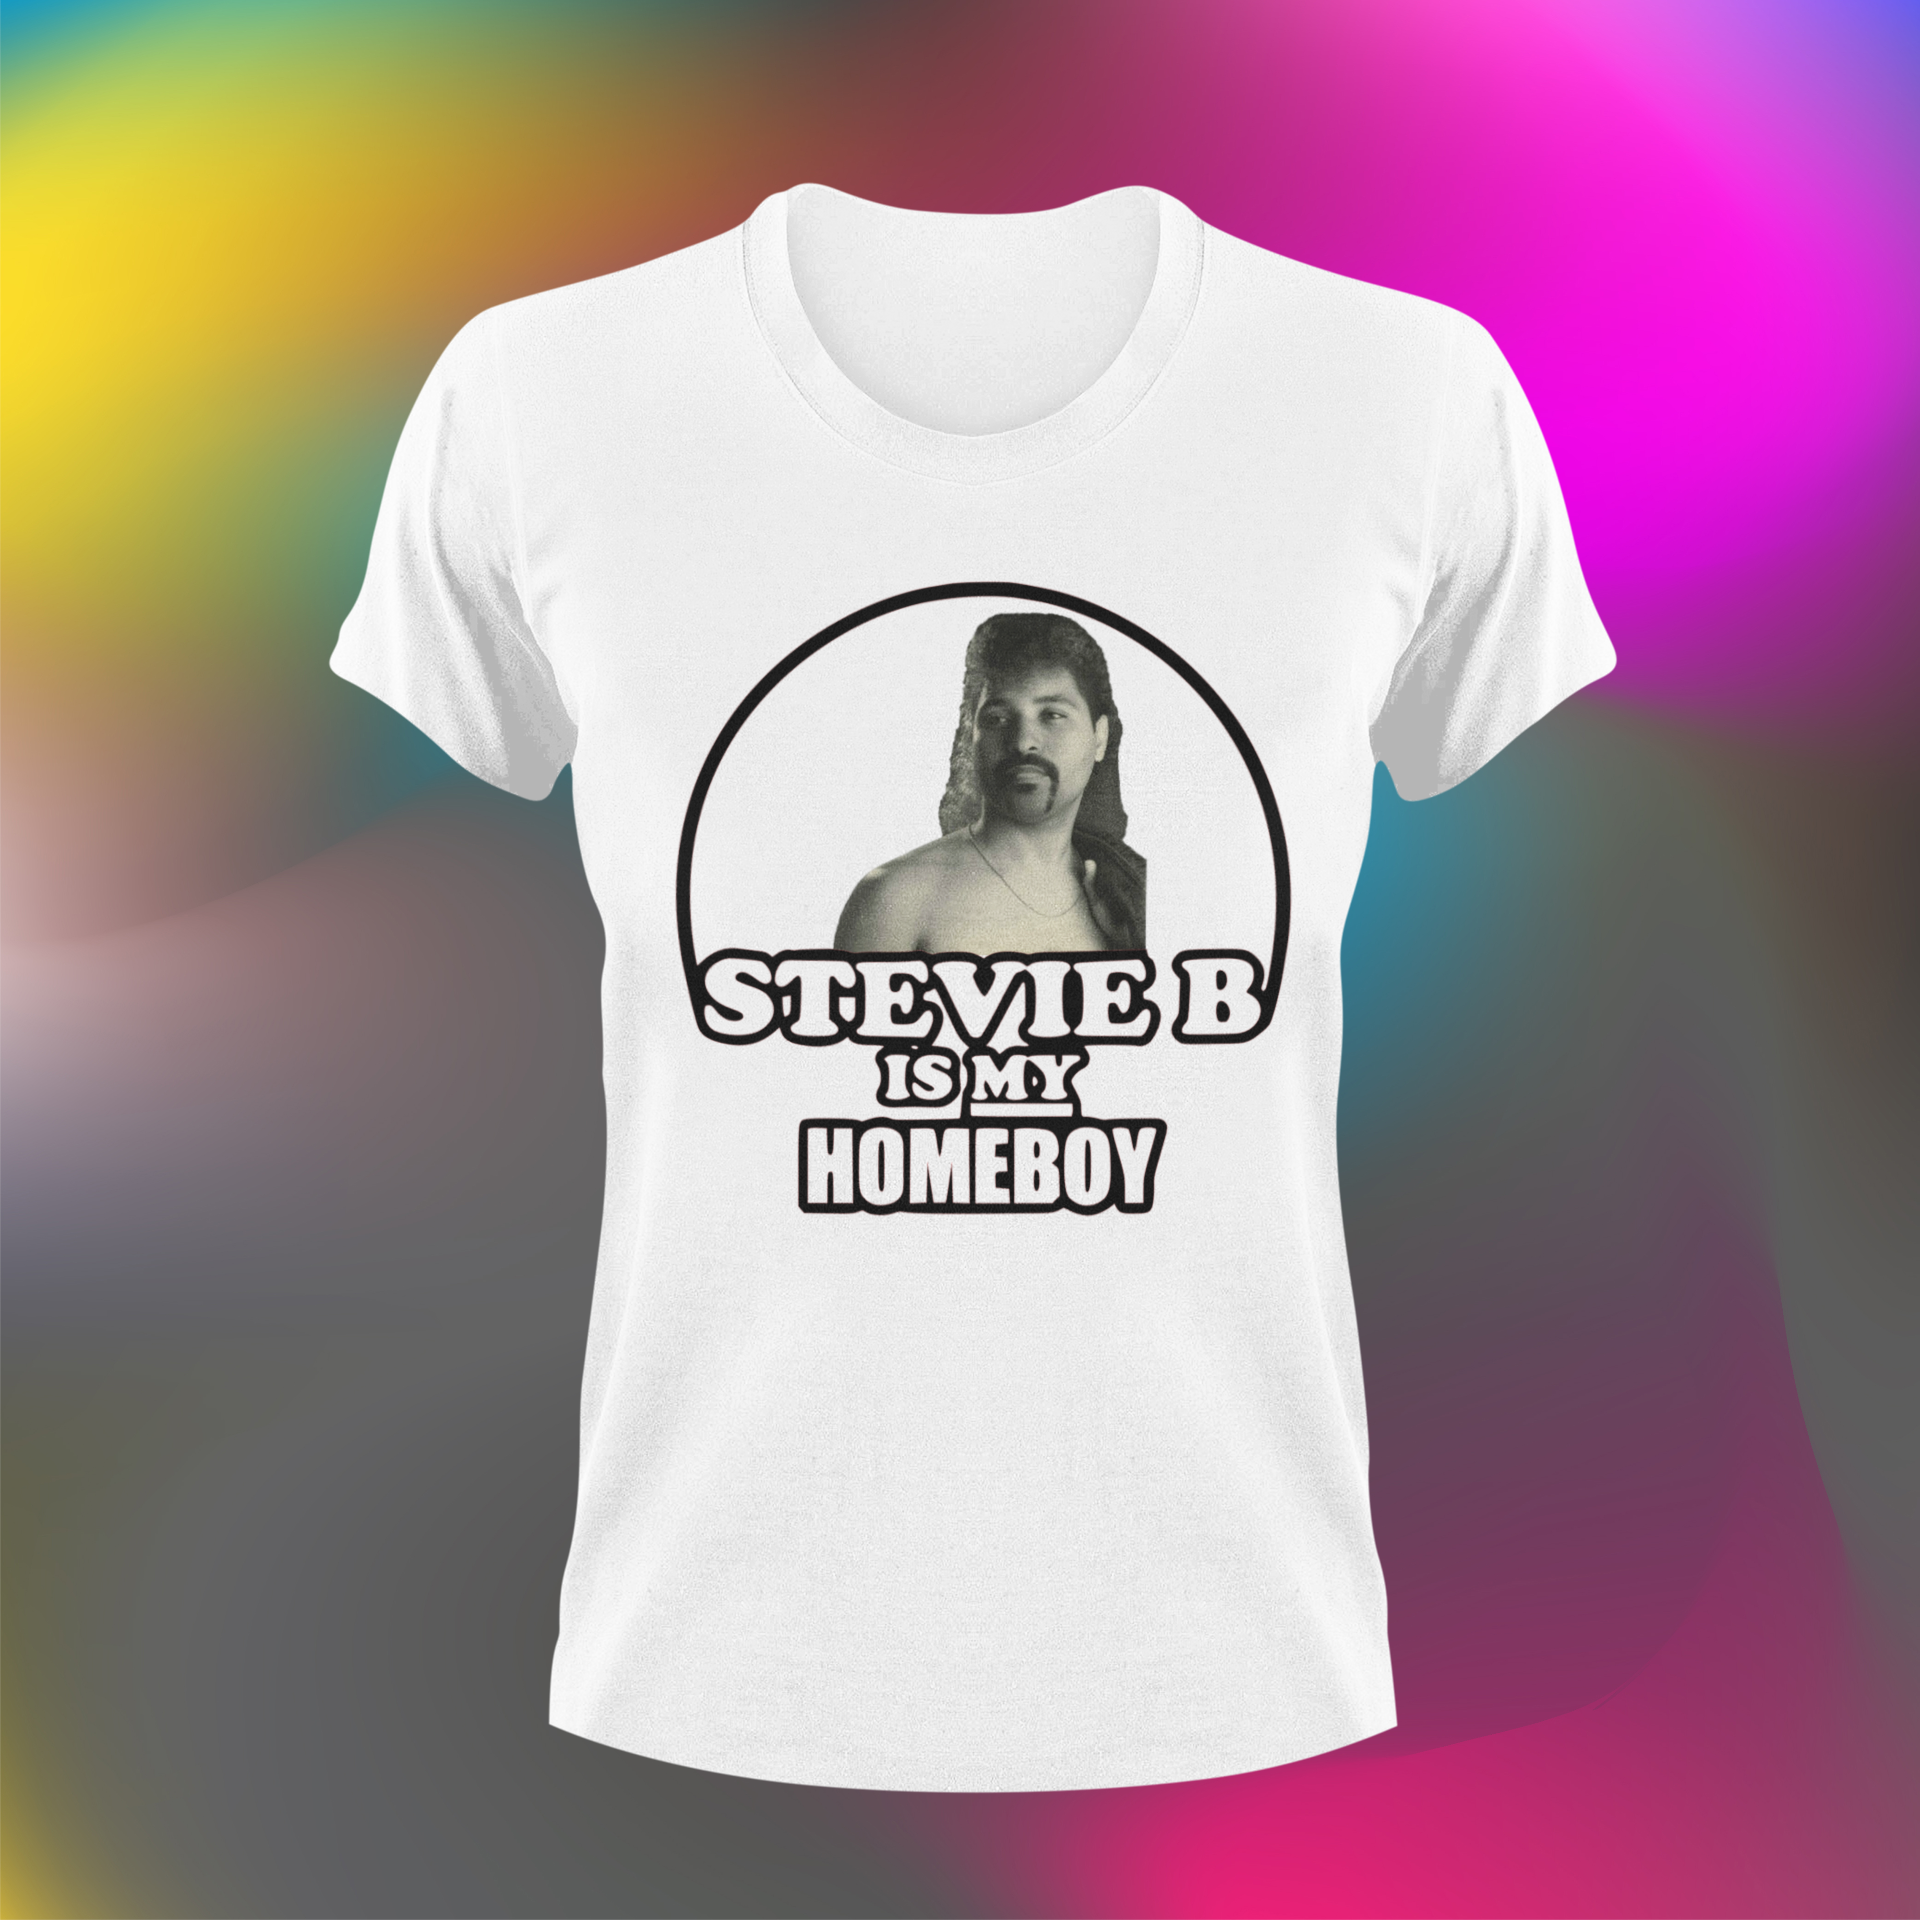 Stevie B is my homeboy version 2.